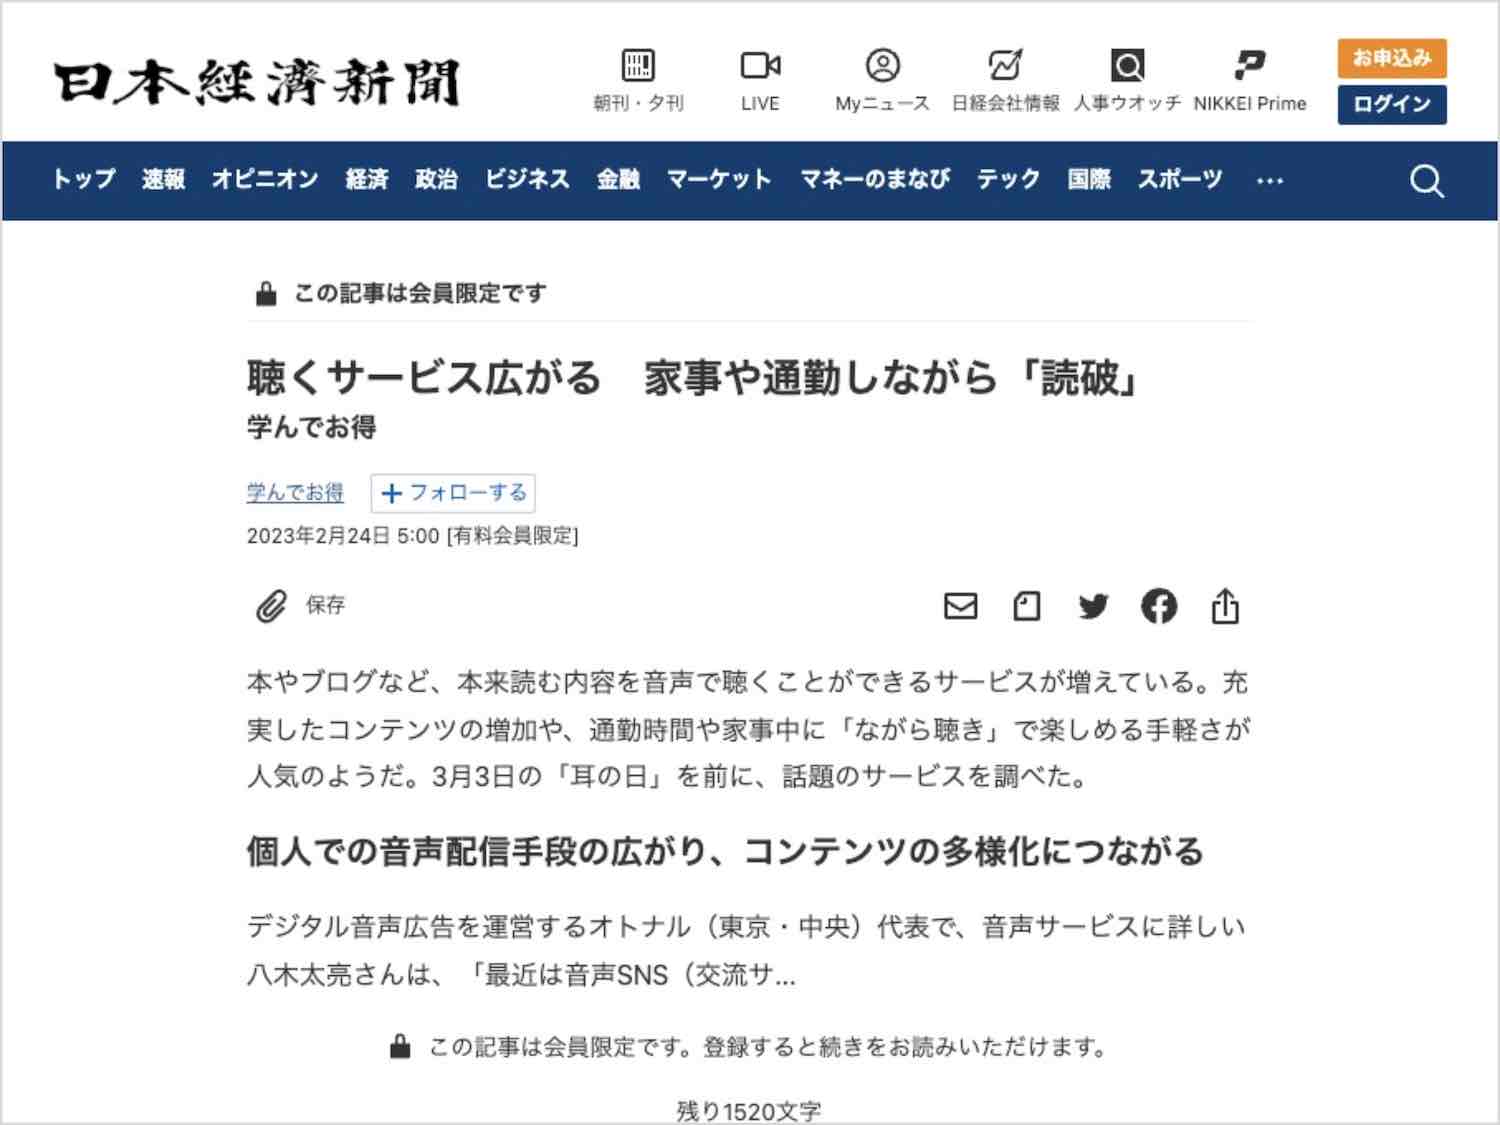 日本経済新聞『NIKKEIプラス1』の「聴くサービス」の特集にて代表の八木が取材されました